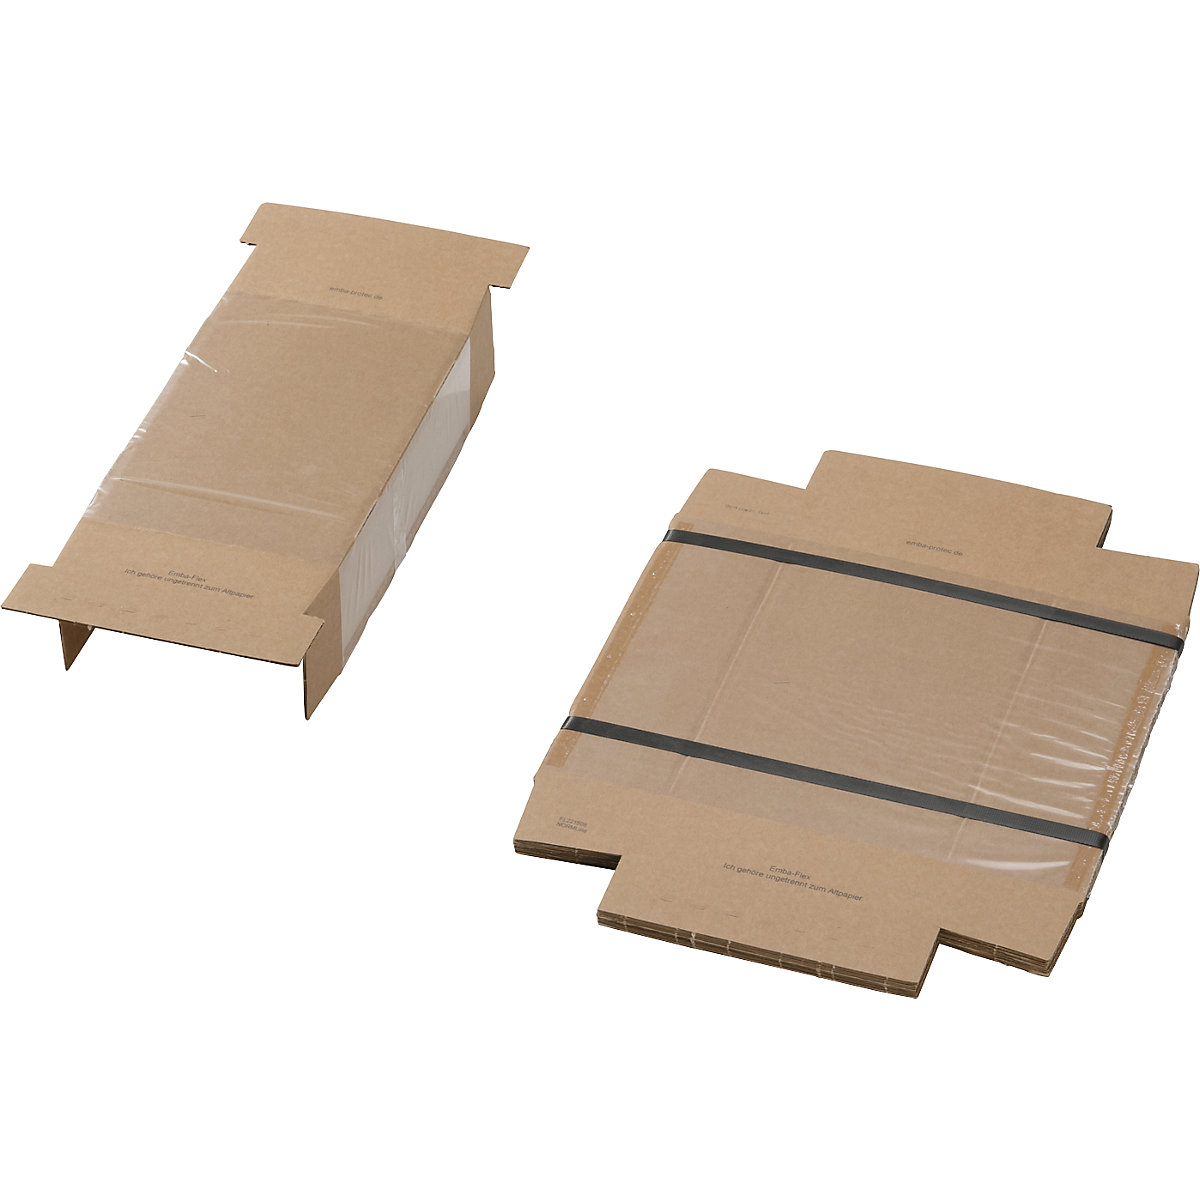 Embalagem de fixação, com encaixe de fixação e embalagem exterior, embalagem de 25 unidades, para dimensões da embalagem CxLxA 220 x 150 x 80 mm-2